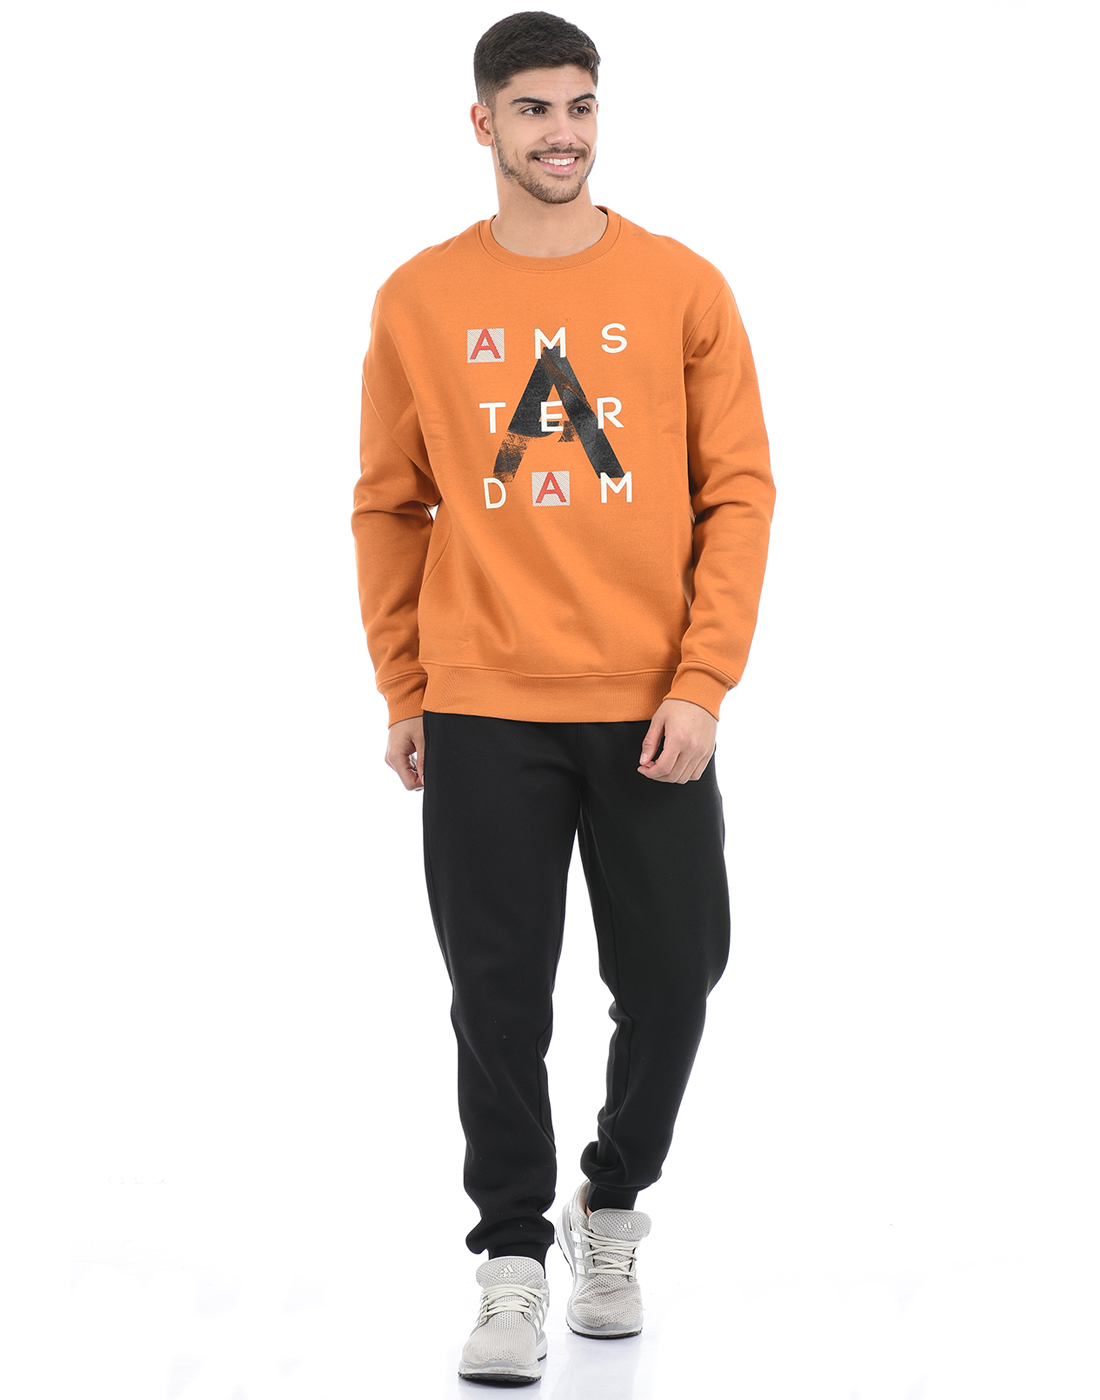 Octobers Very Own Men's Sweatshirt - Orange - S